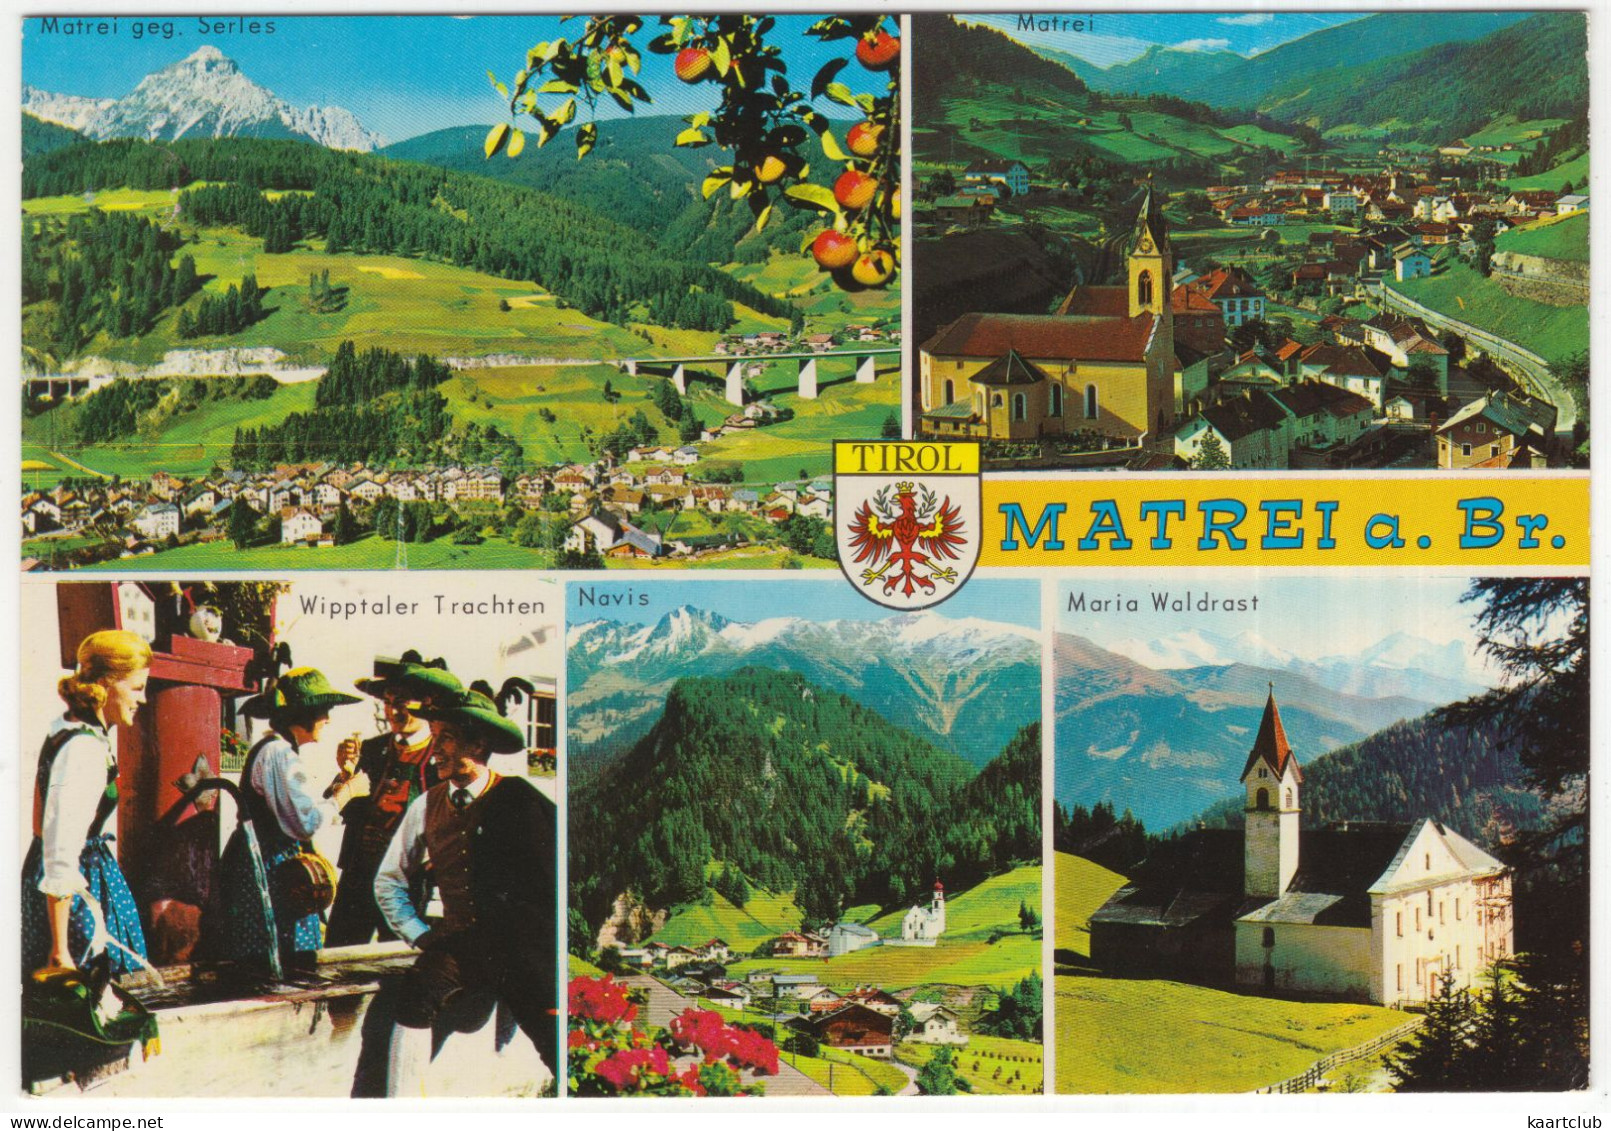 Matrei A. Br. - U.a. Wipptaler Trachten, Navis, Maria Waldrast - (Osttirol, Österreich/ Austria) - Matrei Am Brenner